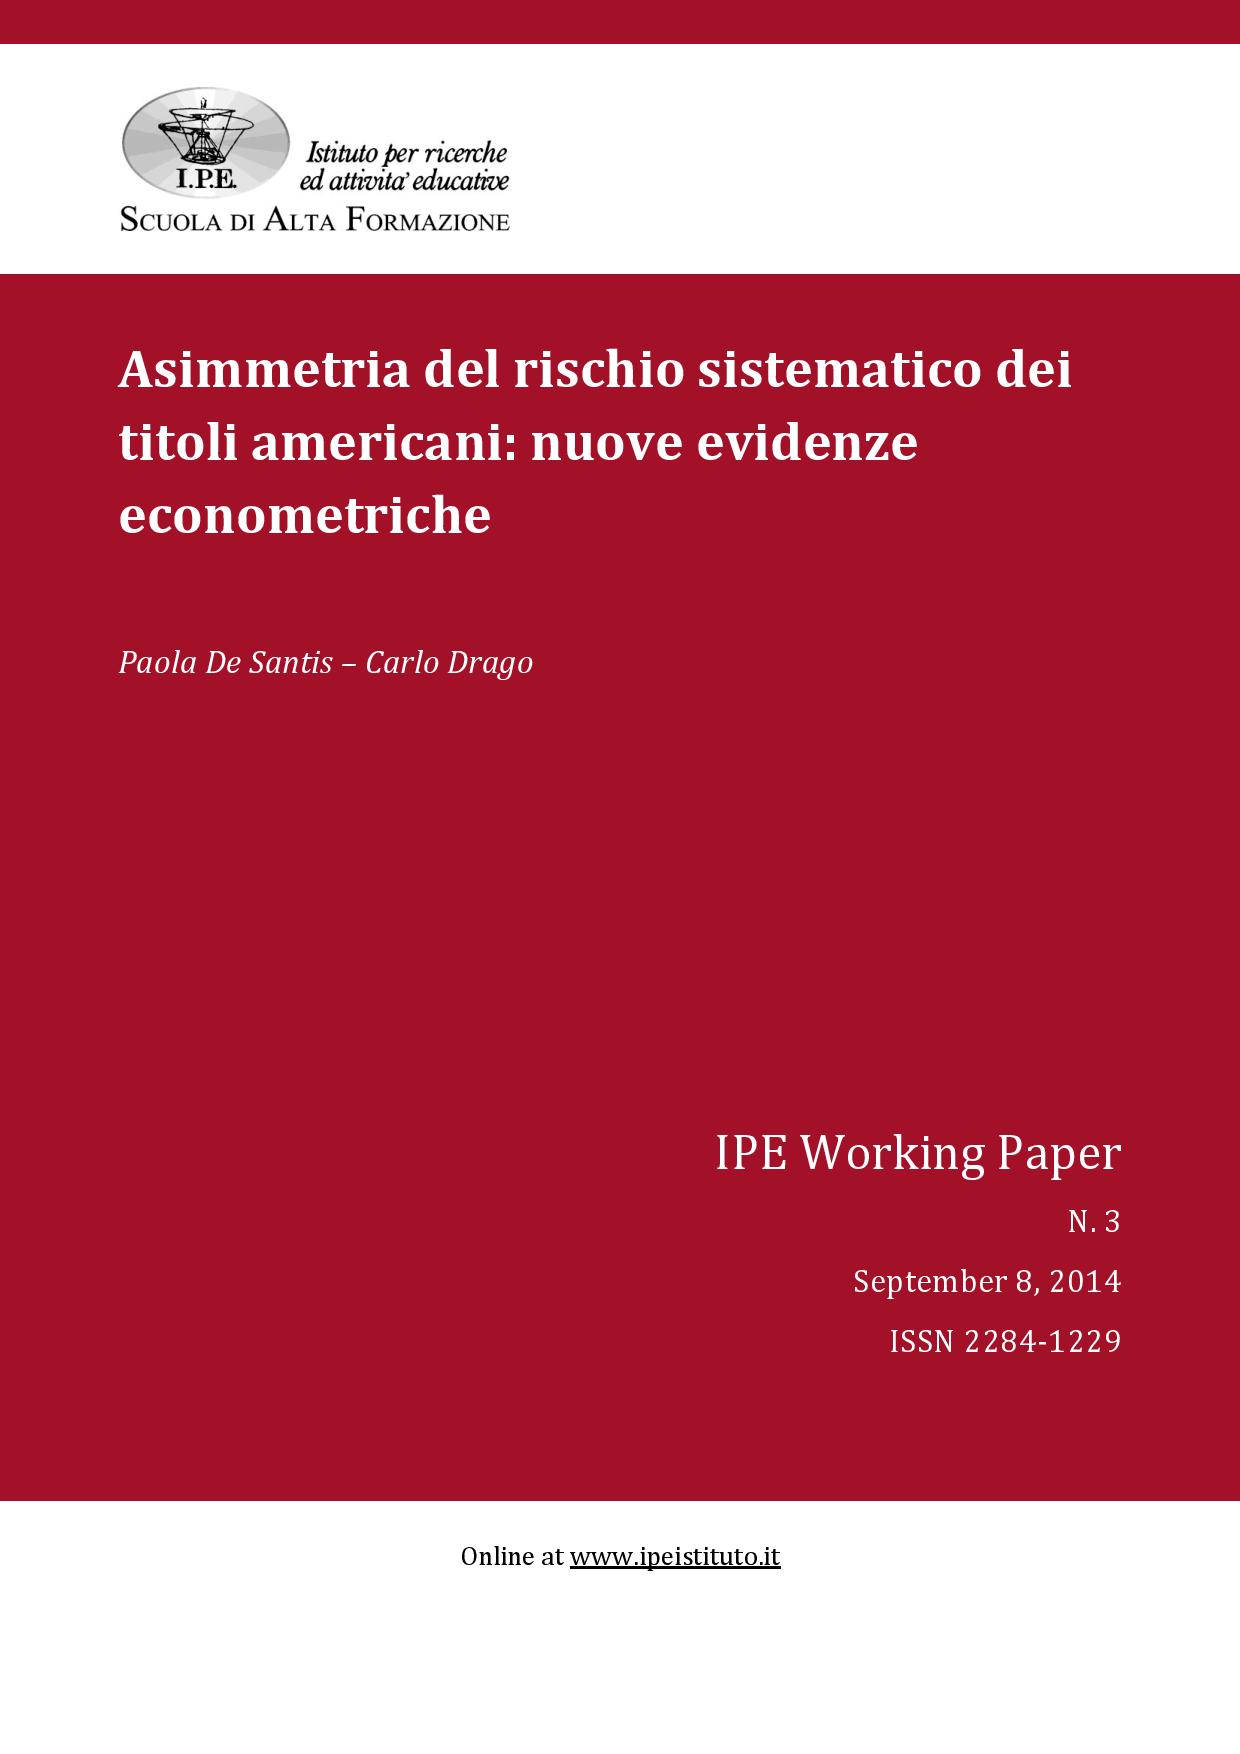 IPE Working Paper N.3/2014